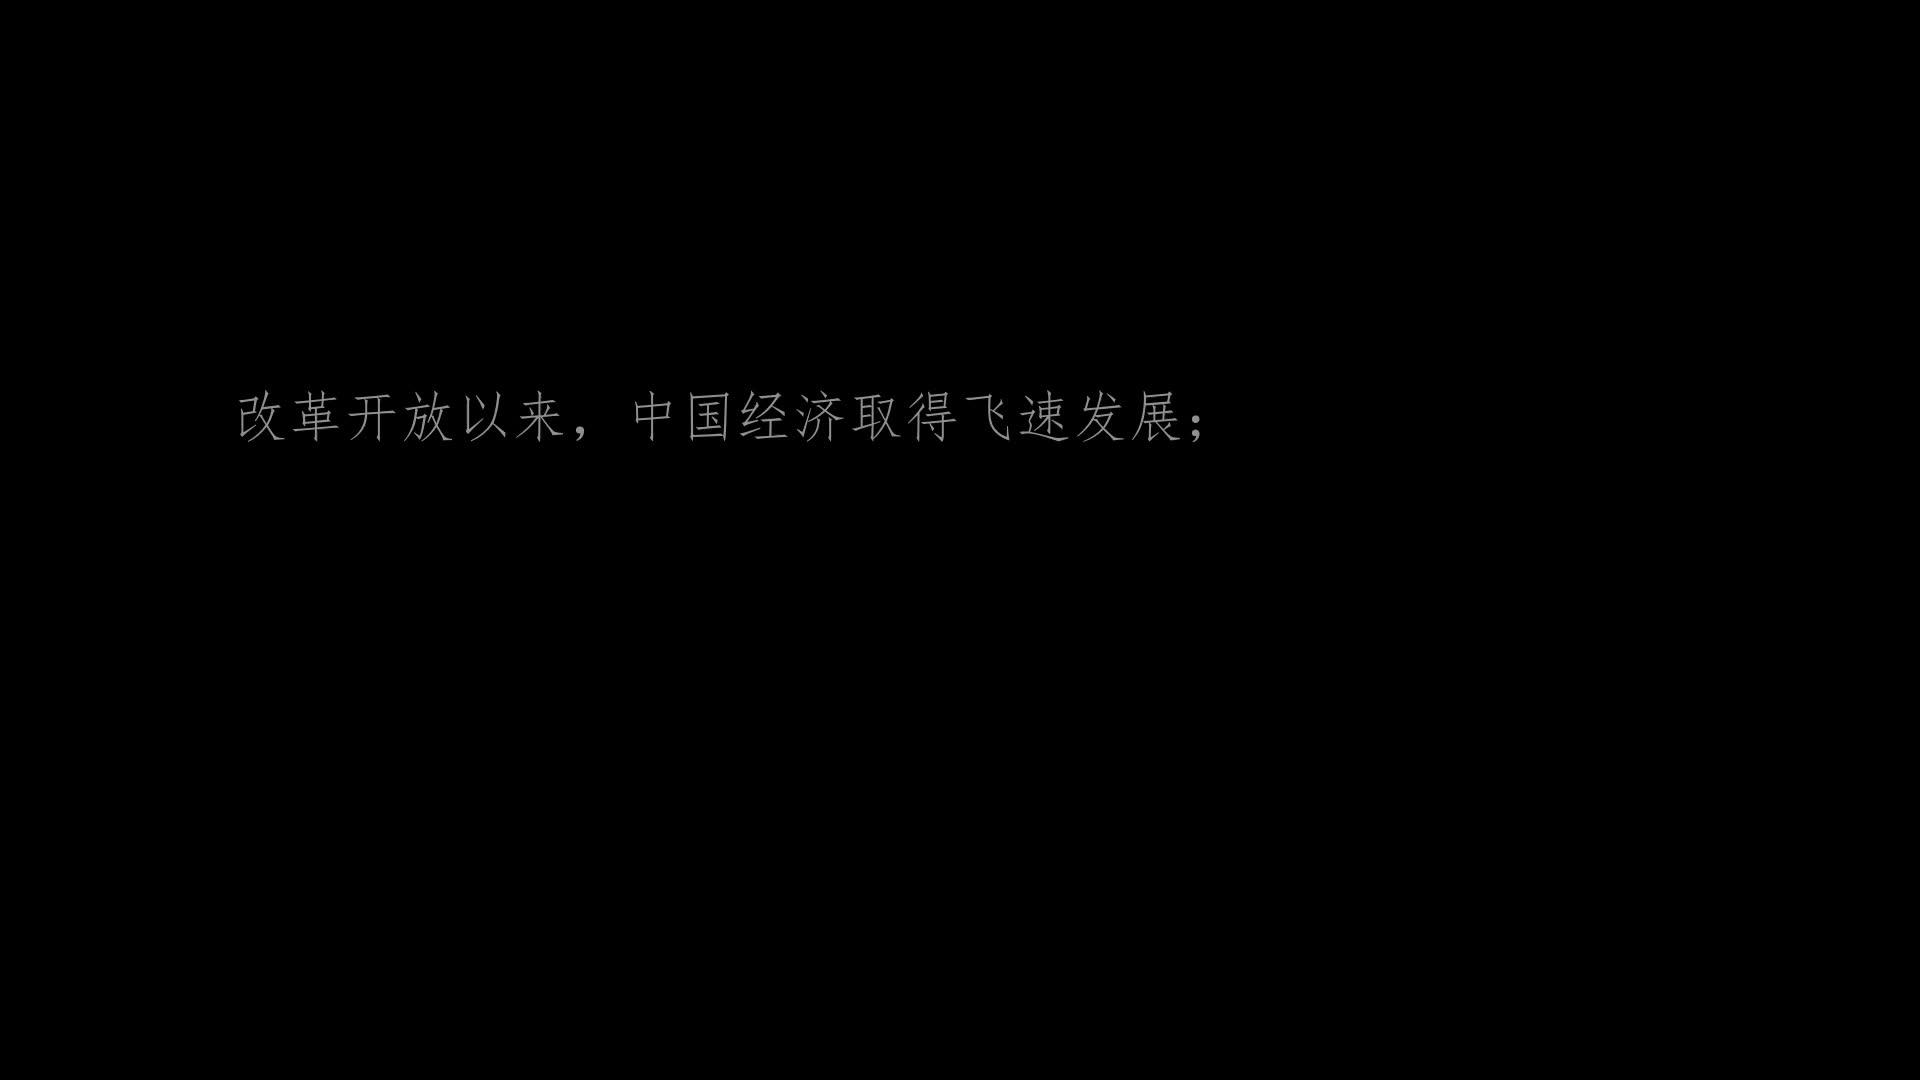 江西银行乡村振兴宣传片《在希望的田野上》